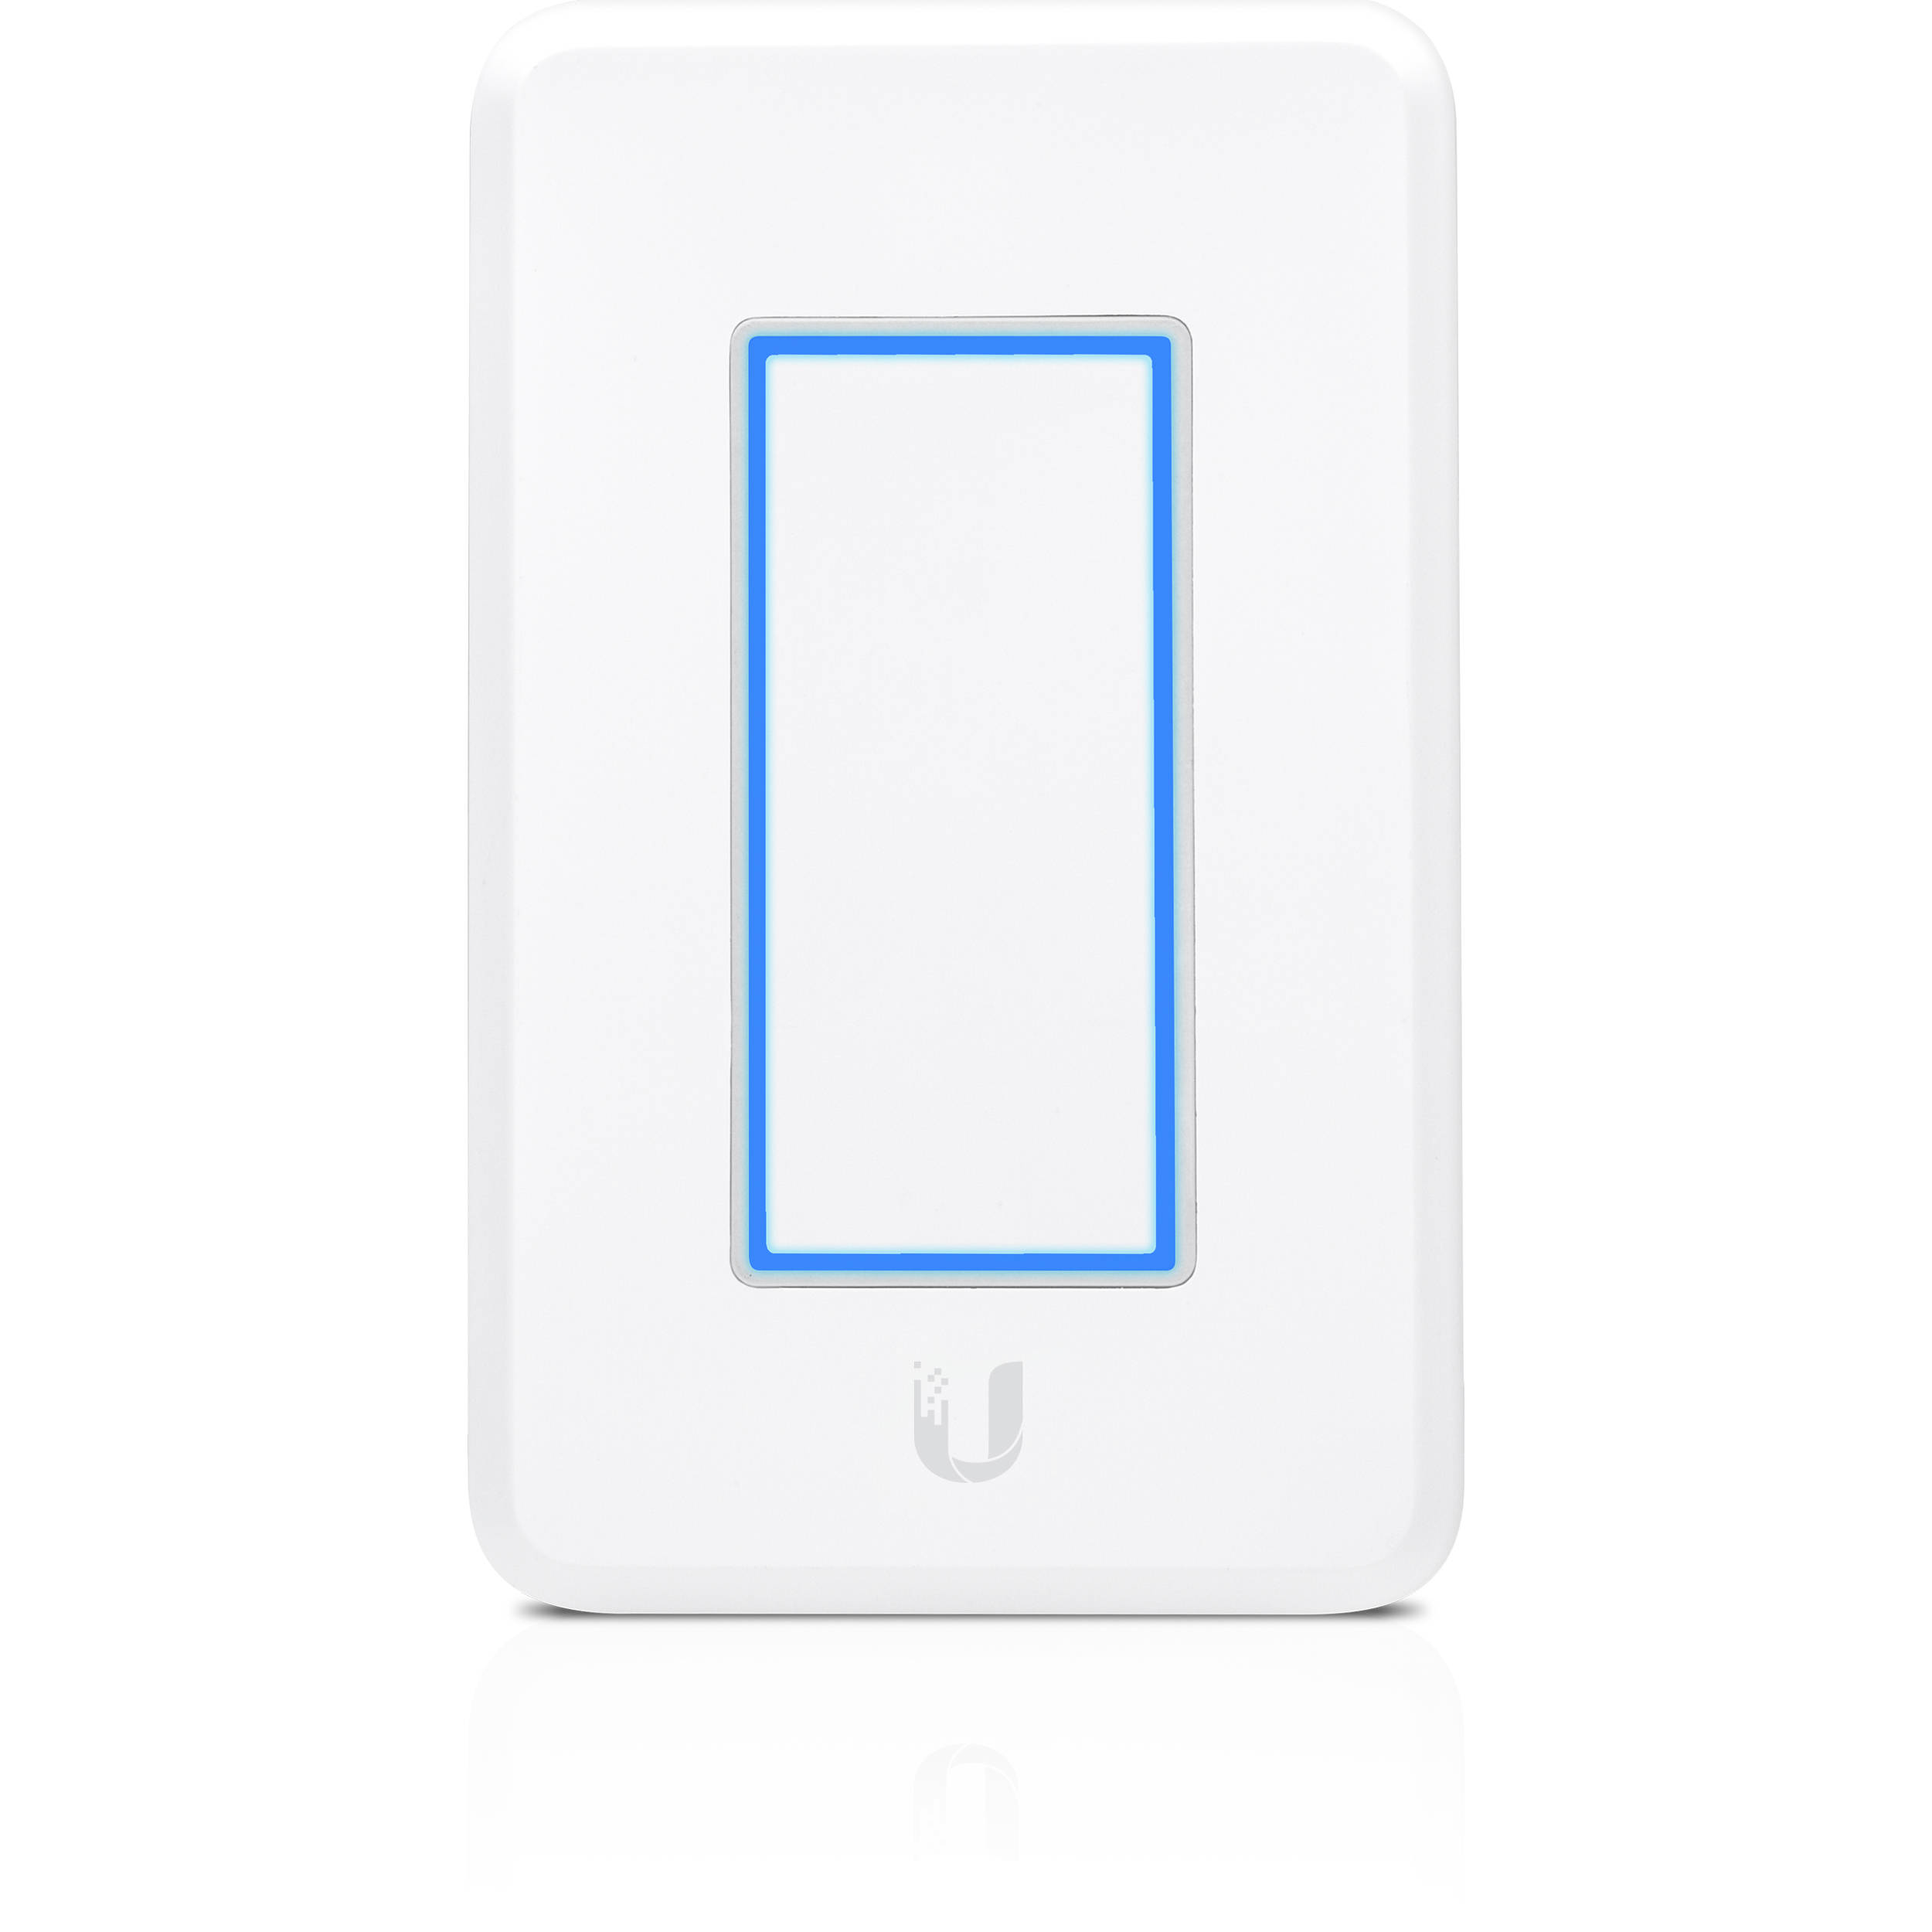 Ubiquiti UniFi Light Dimmer PoE Powered for ULED Smart Lighting